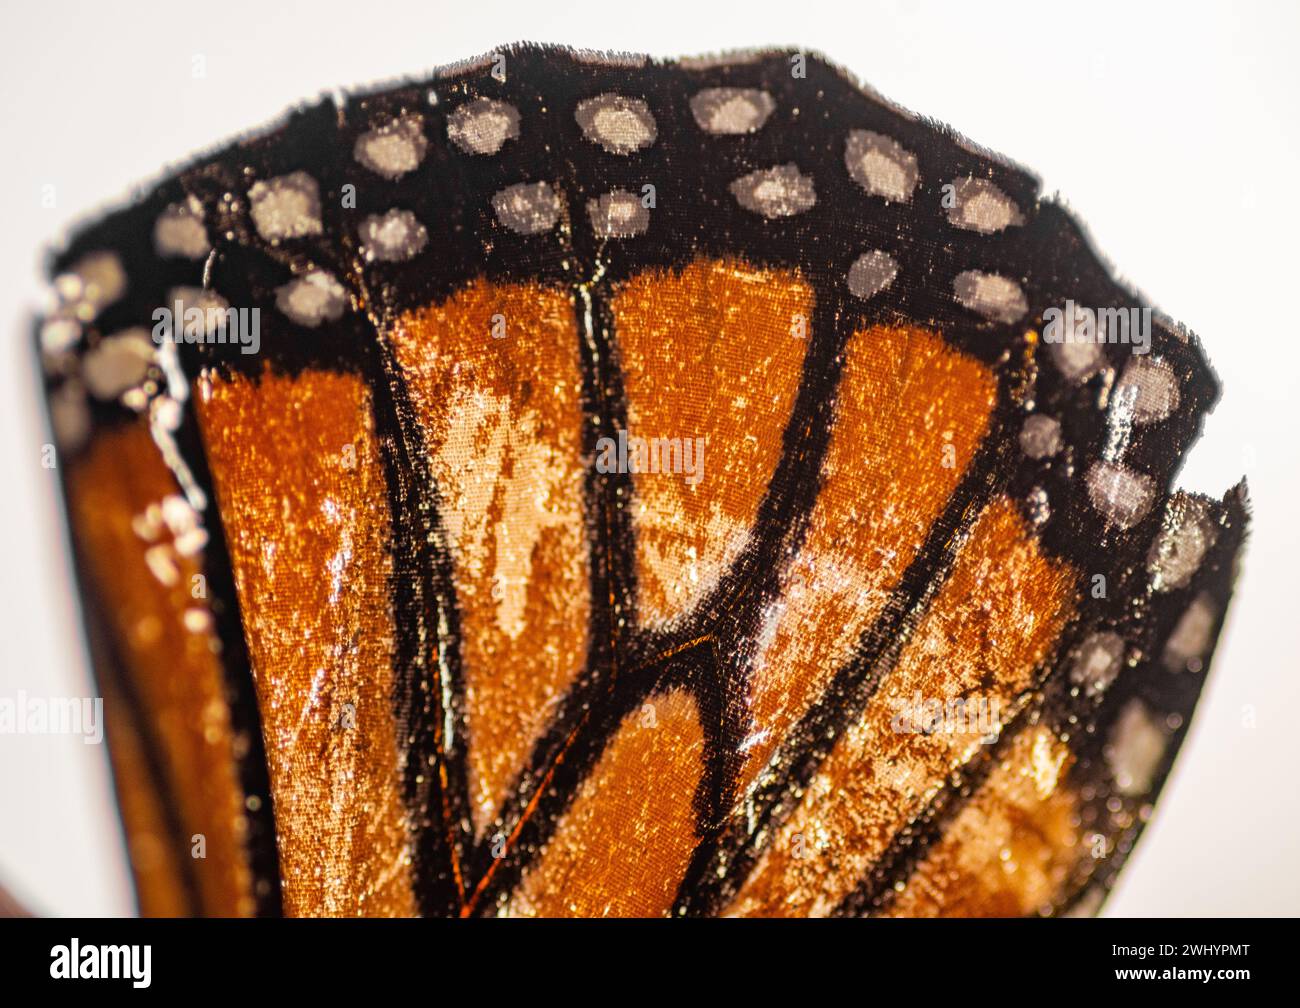 Macro, Monarch Butterfly, aile, gros plan, détail, orange, Noir, Blanc, contrastes, écailles papillon, gros plan extrême, photographie macro Banque D'Images